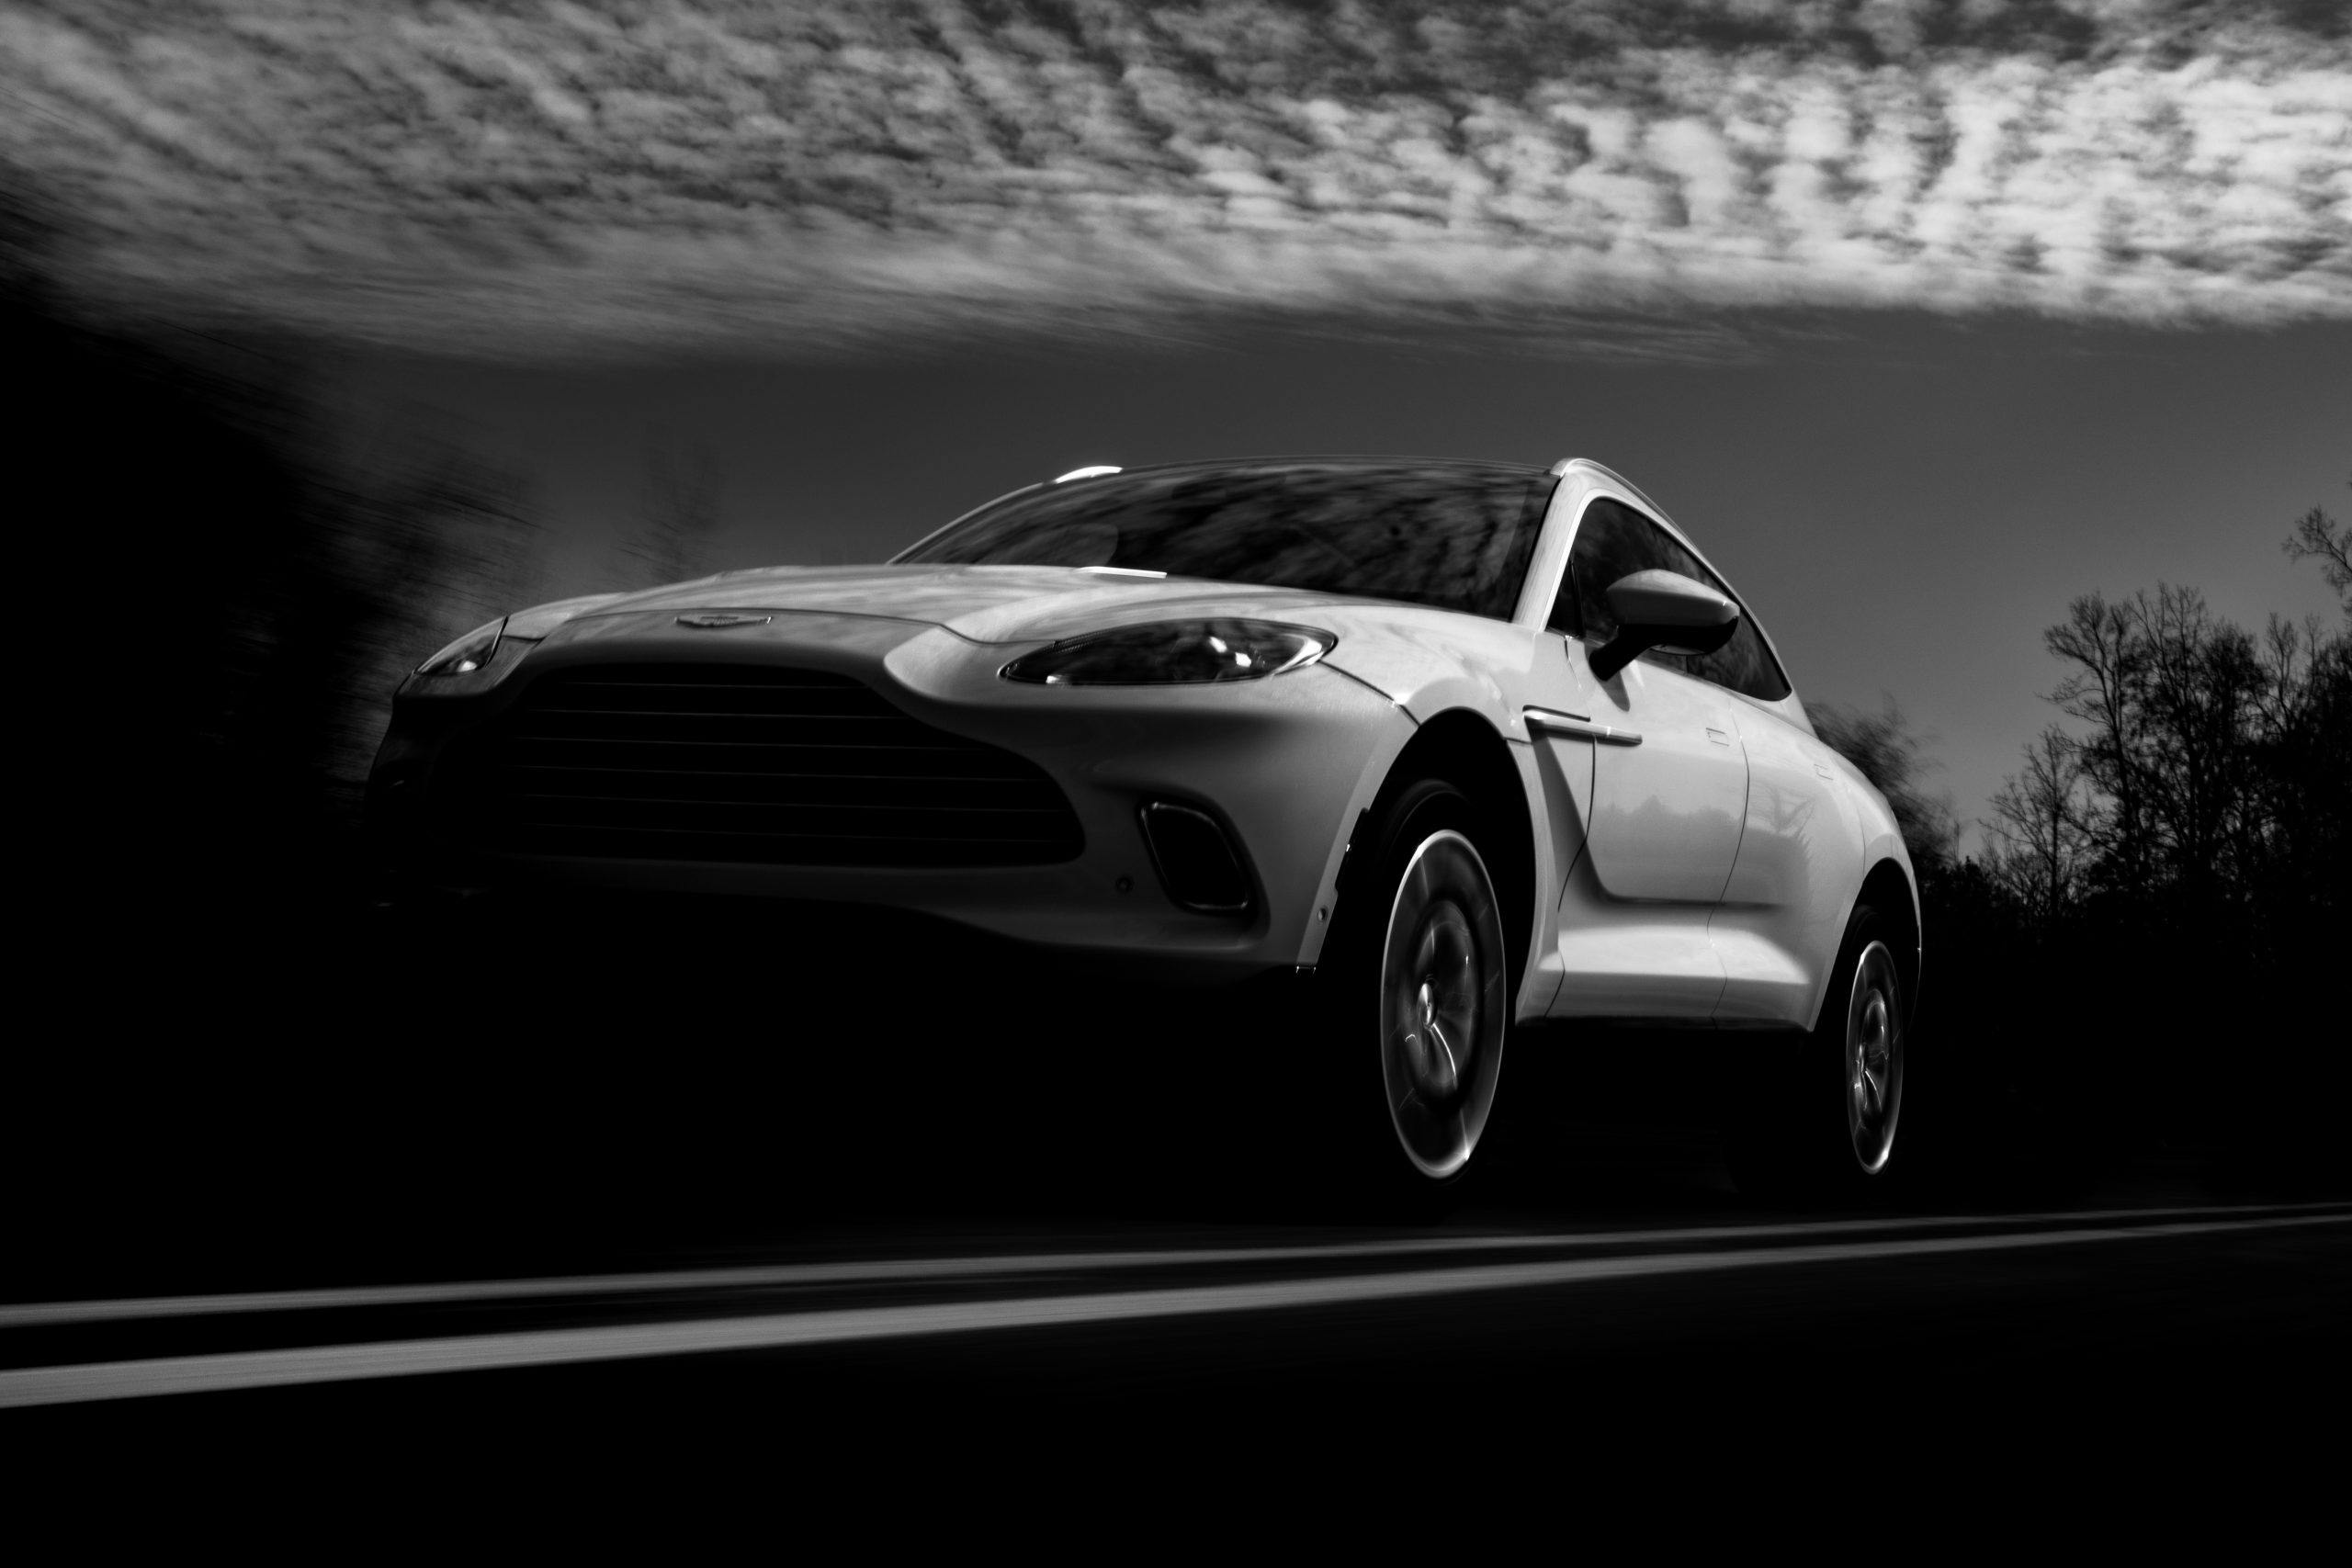 2021 Aston Martin DBX black and white